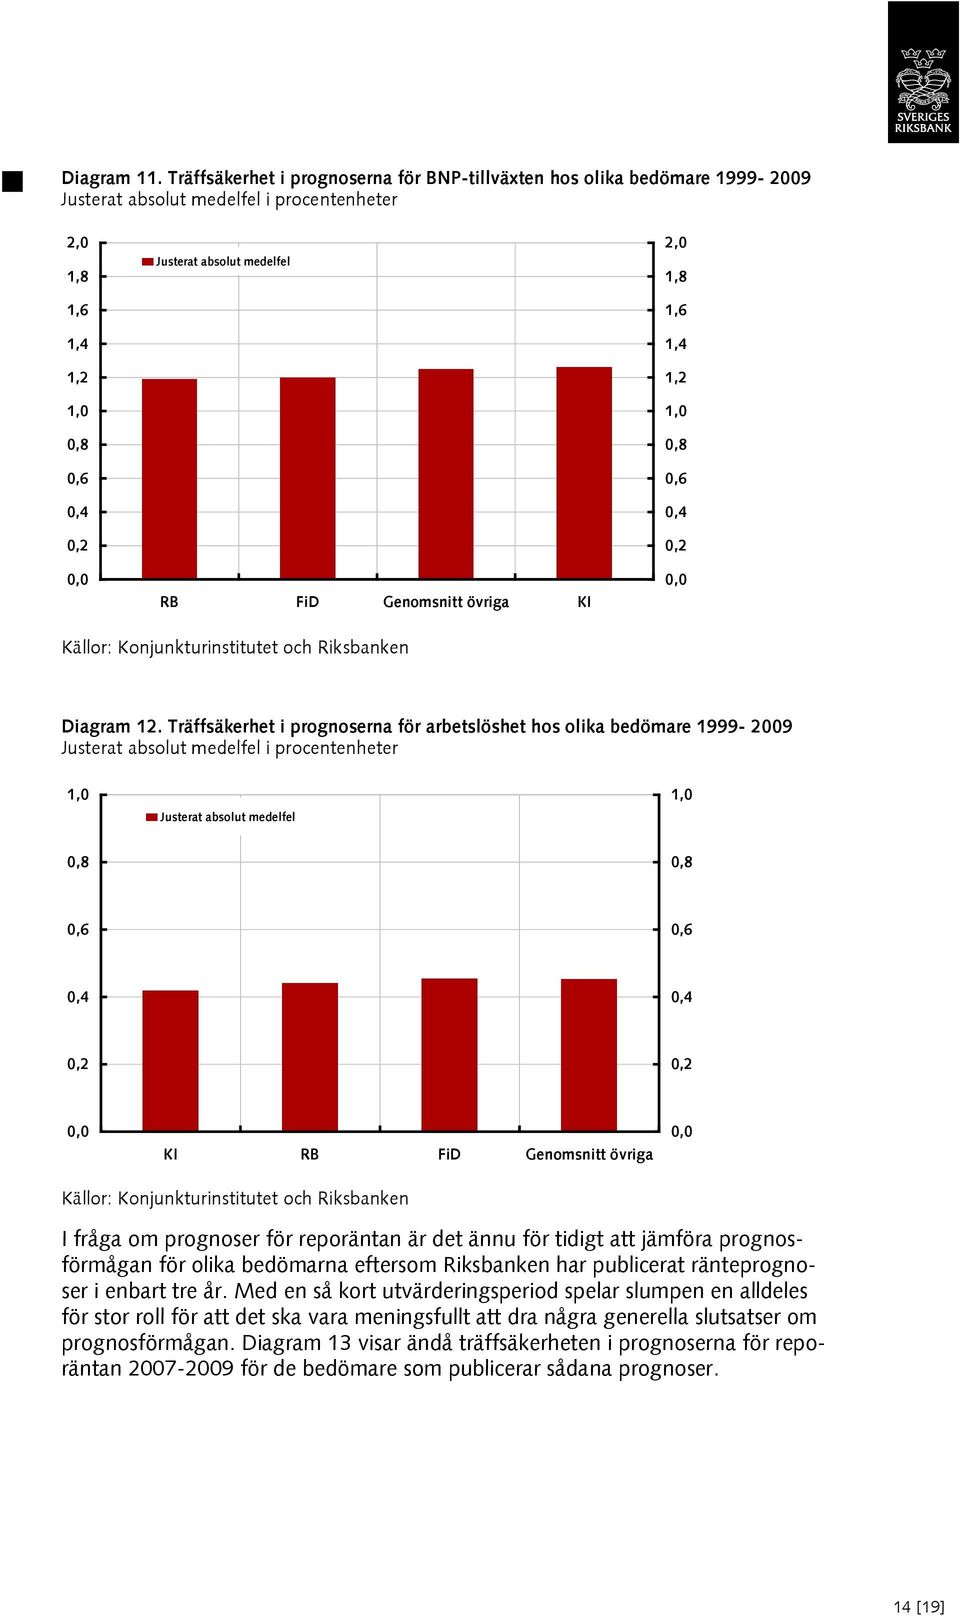 Källor: Konjunkturinstitutet och Riksbanken  Träffsäkerhet i prognoserna för arbetslöshet hos olika bedömare 999-9 Justerat absolut medelfel i procentenheter, Justerat absolut medelfel,,8,8,6,6,,,,,